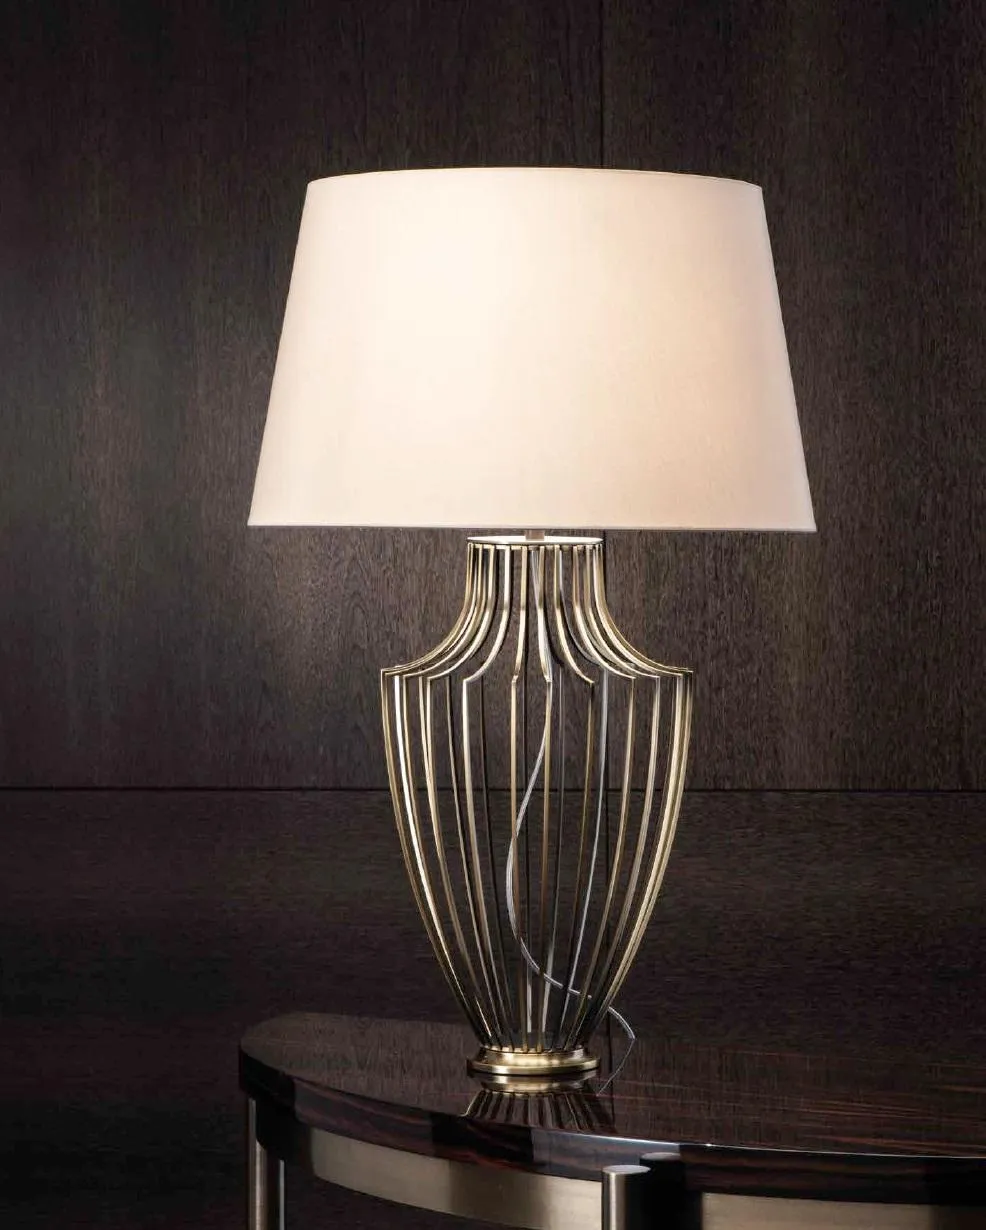 Tischleuchte Tischlampe Lampe Wohnzimmer Nachttischlampen neu Metall